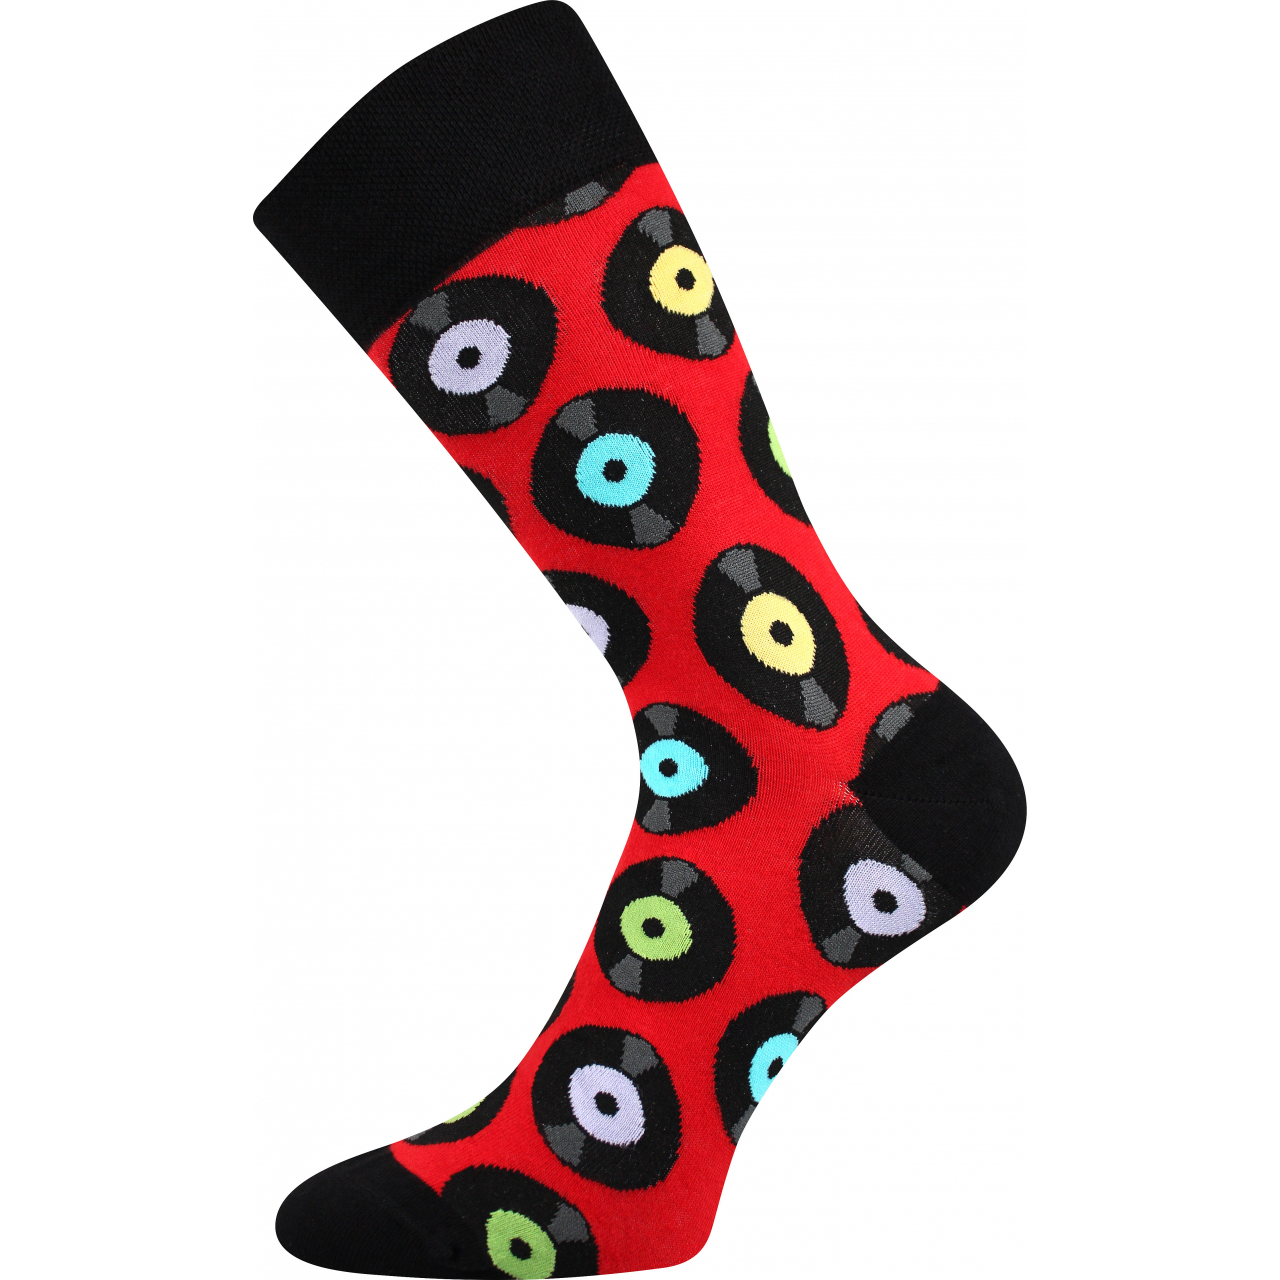 Ponožky společenské unisex Lonka Twidor LP desky - červené-černé, 39-42